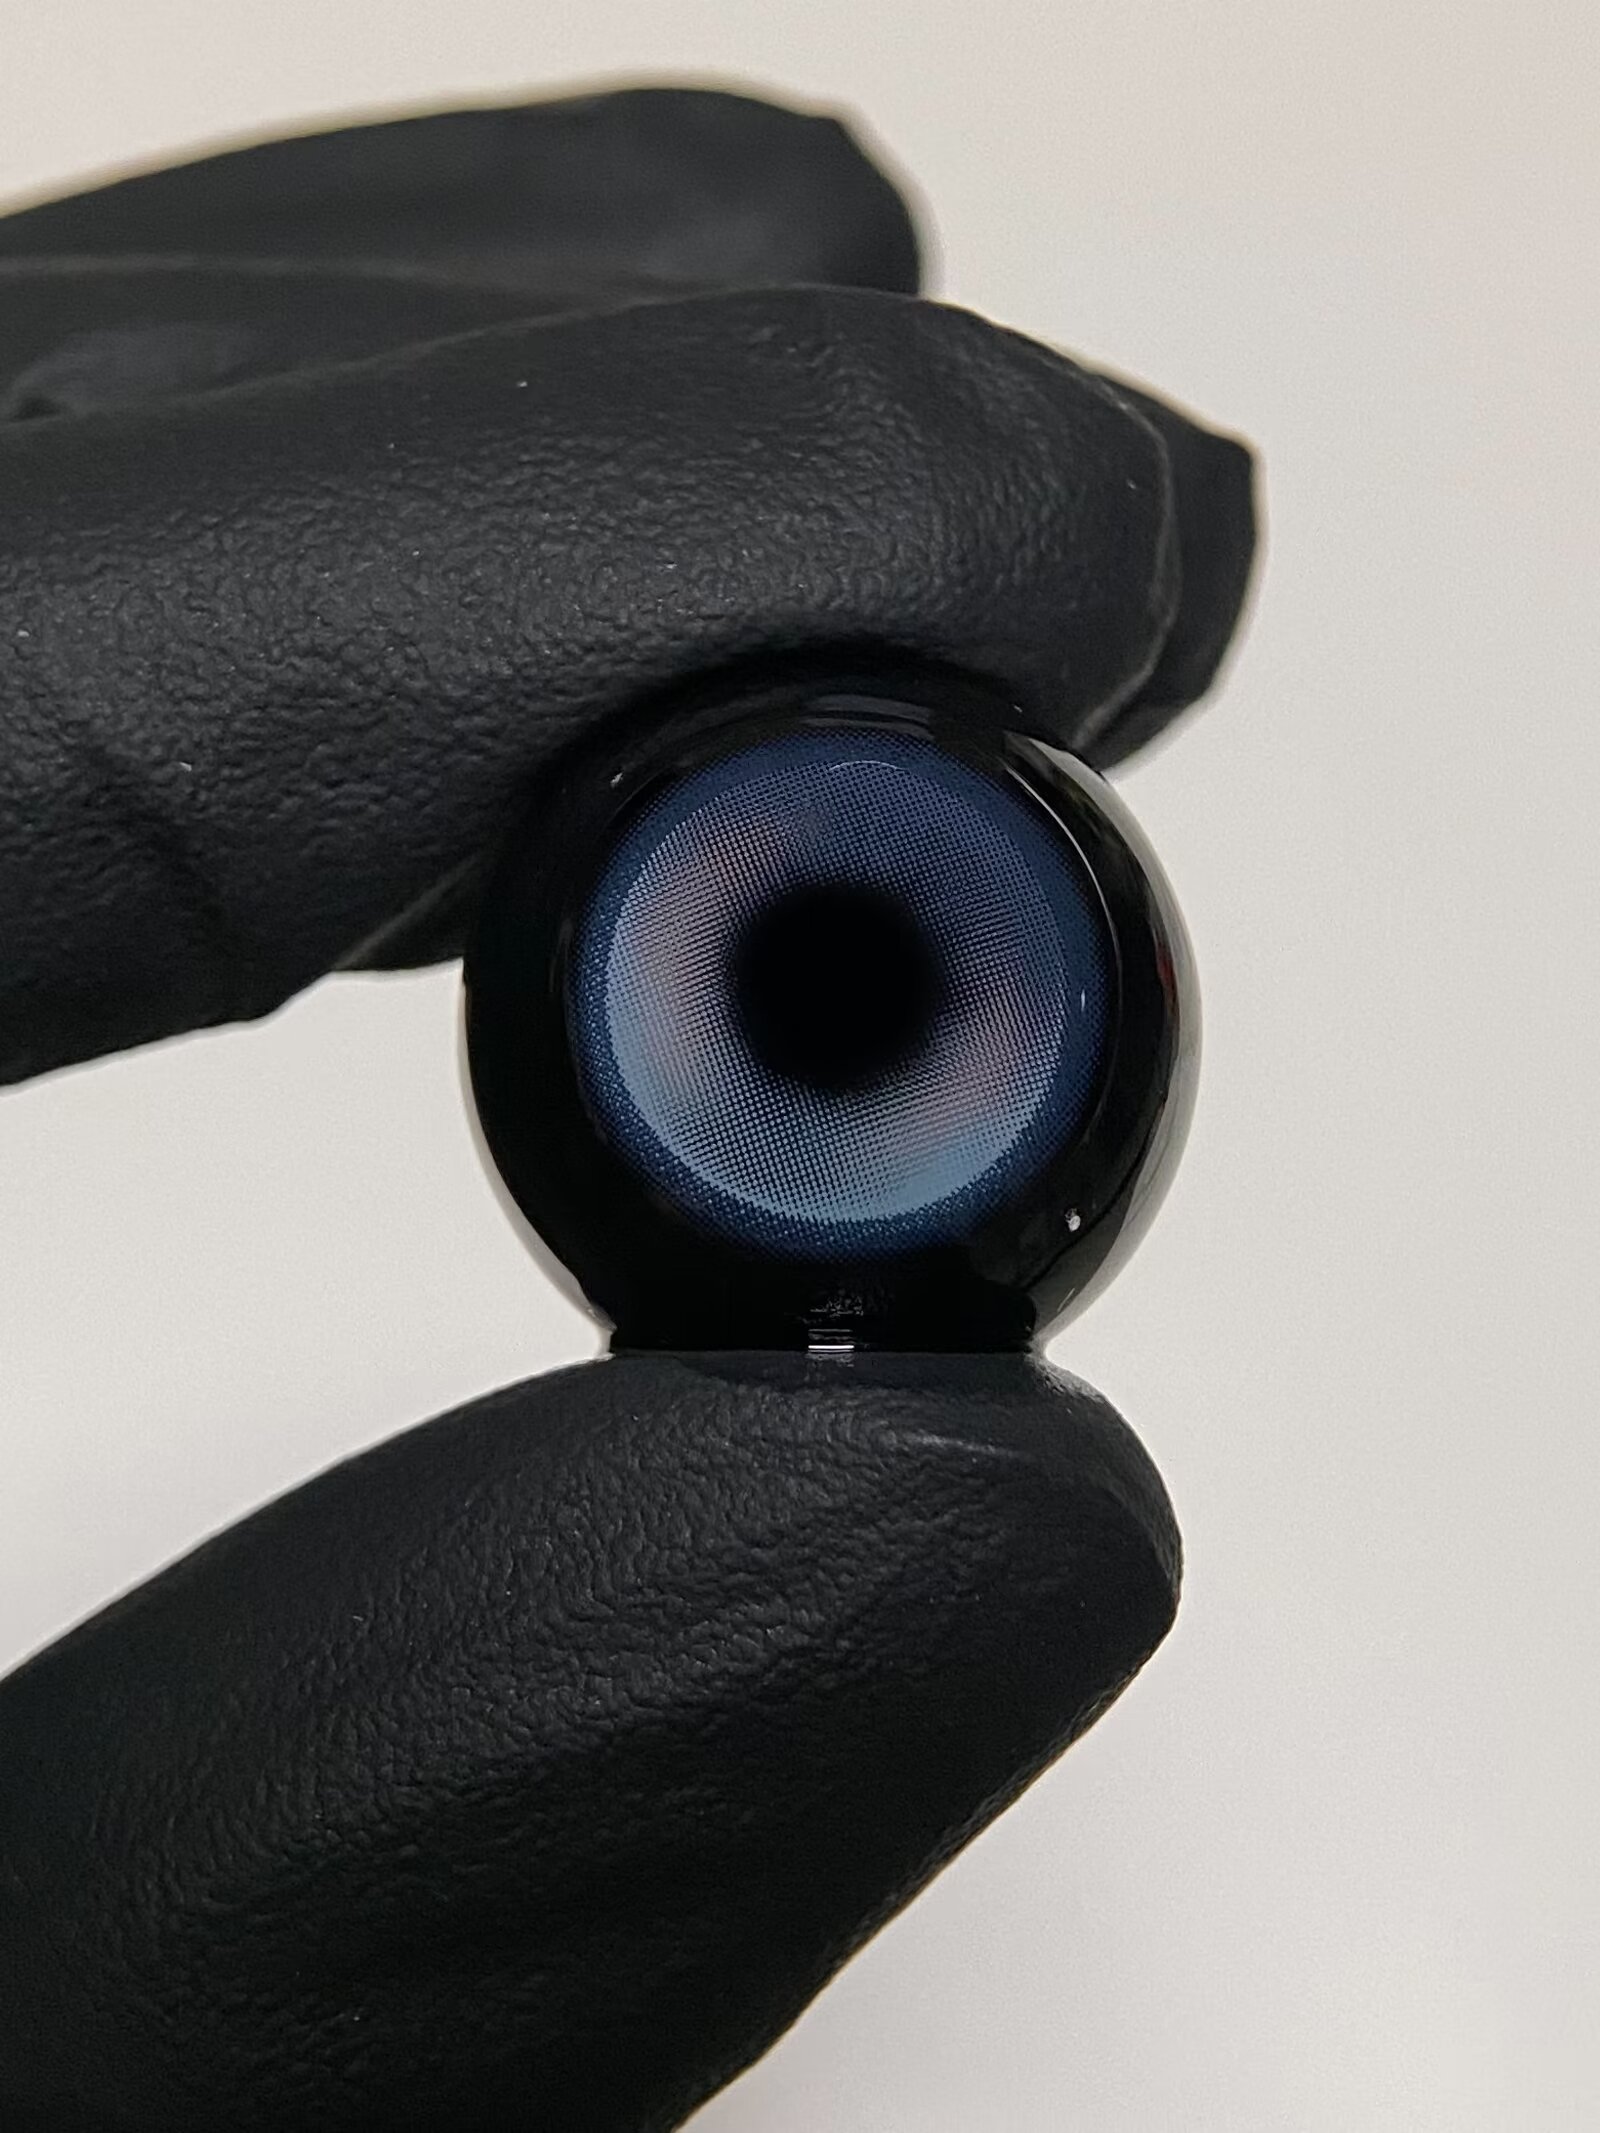 WOOLILENS 彩虹中毒%蓝14.2mm 半年抛彩色隐形眼镜 1副/2片 左右眼度数可不同 - VVCON美瞳网